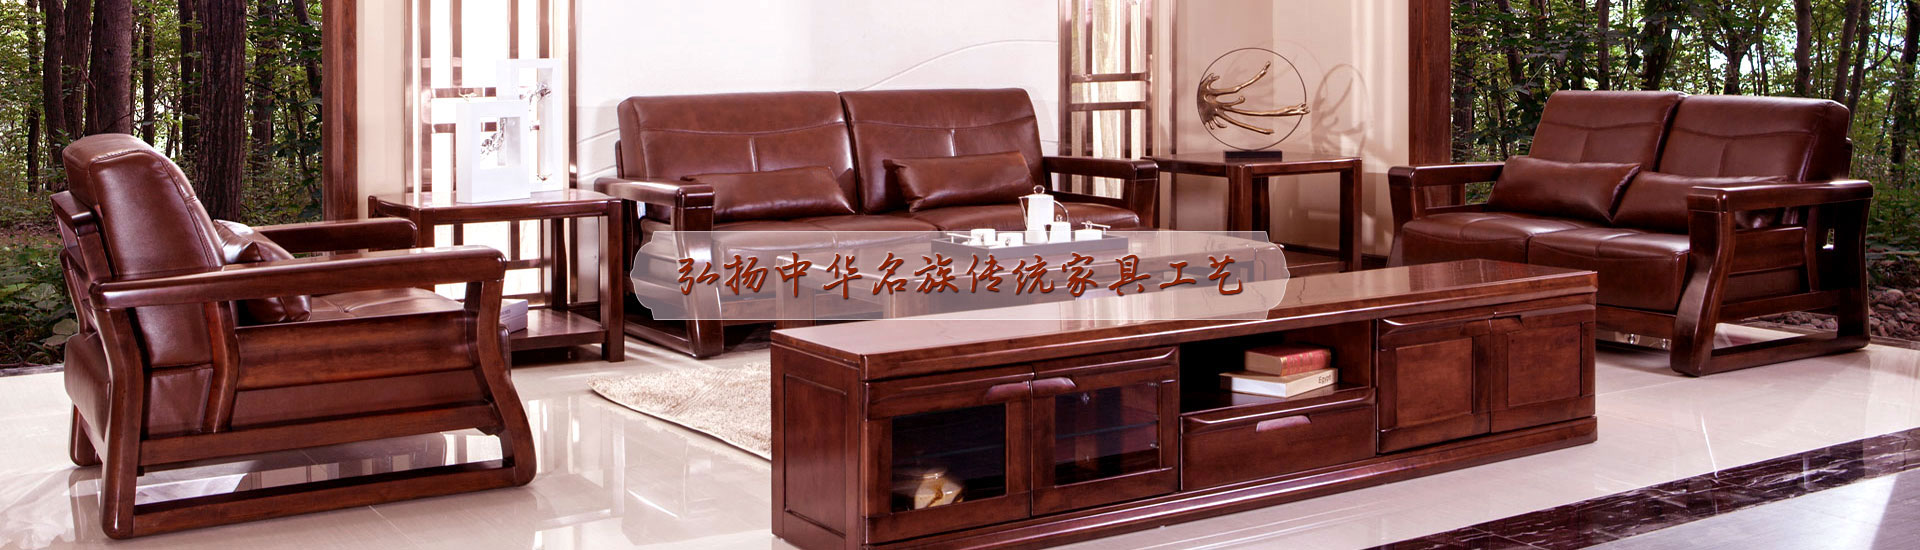 客厅家具定制多少钱_欧式古典家具-重庆云轩家具有限公司